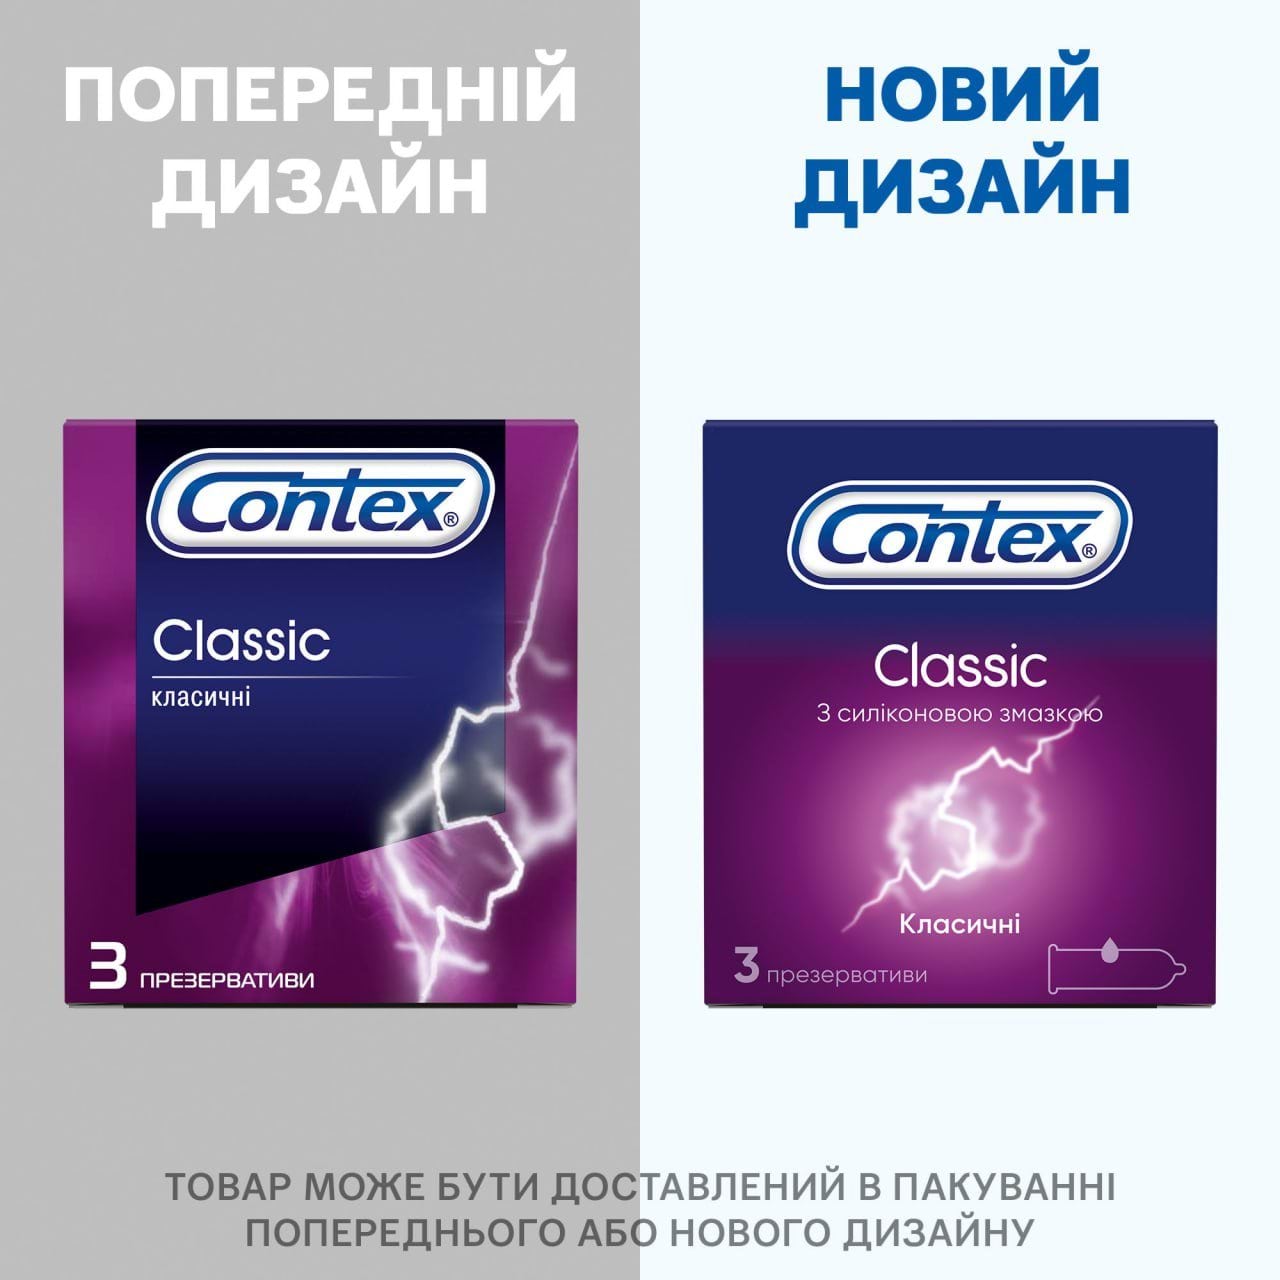 Презервативы с силиконовой смазкой CONTEX® Classic (классические), 3 шт.